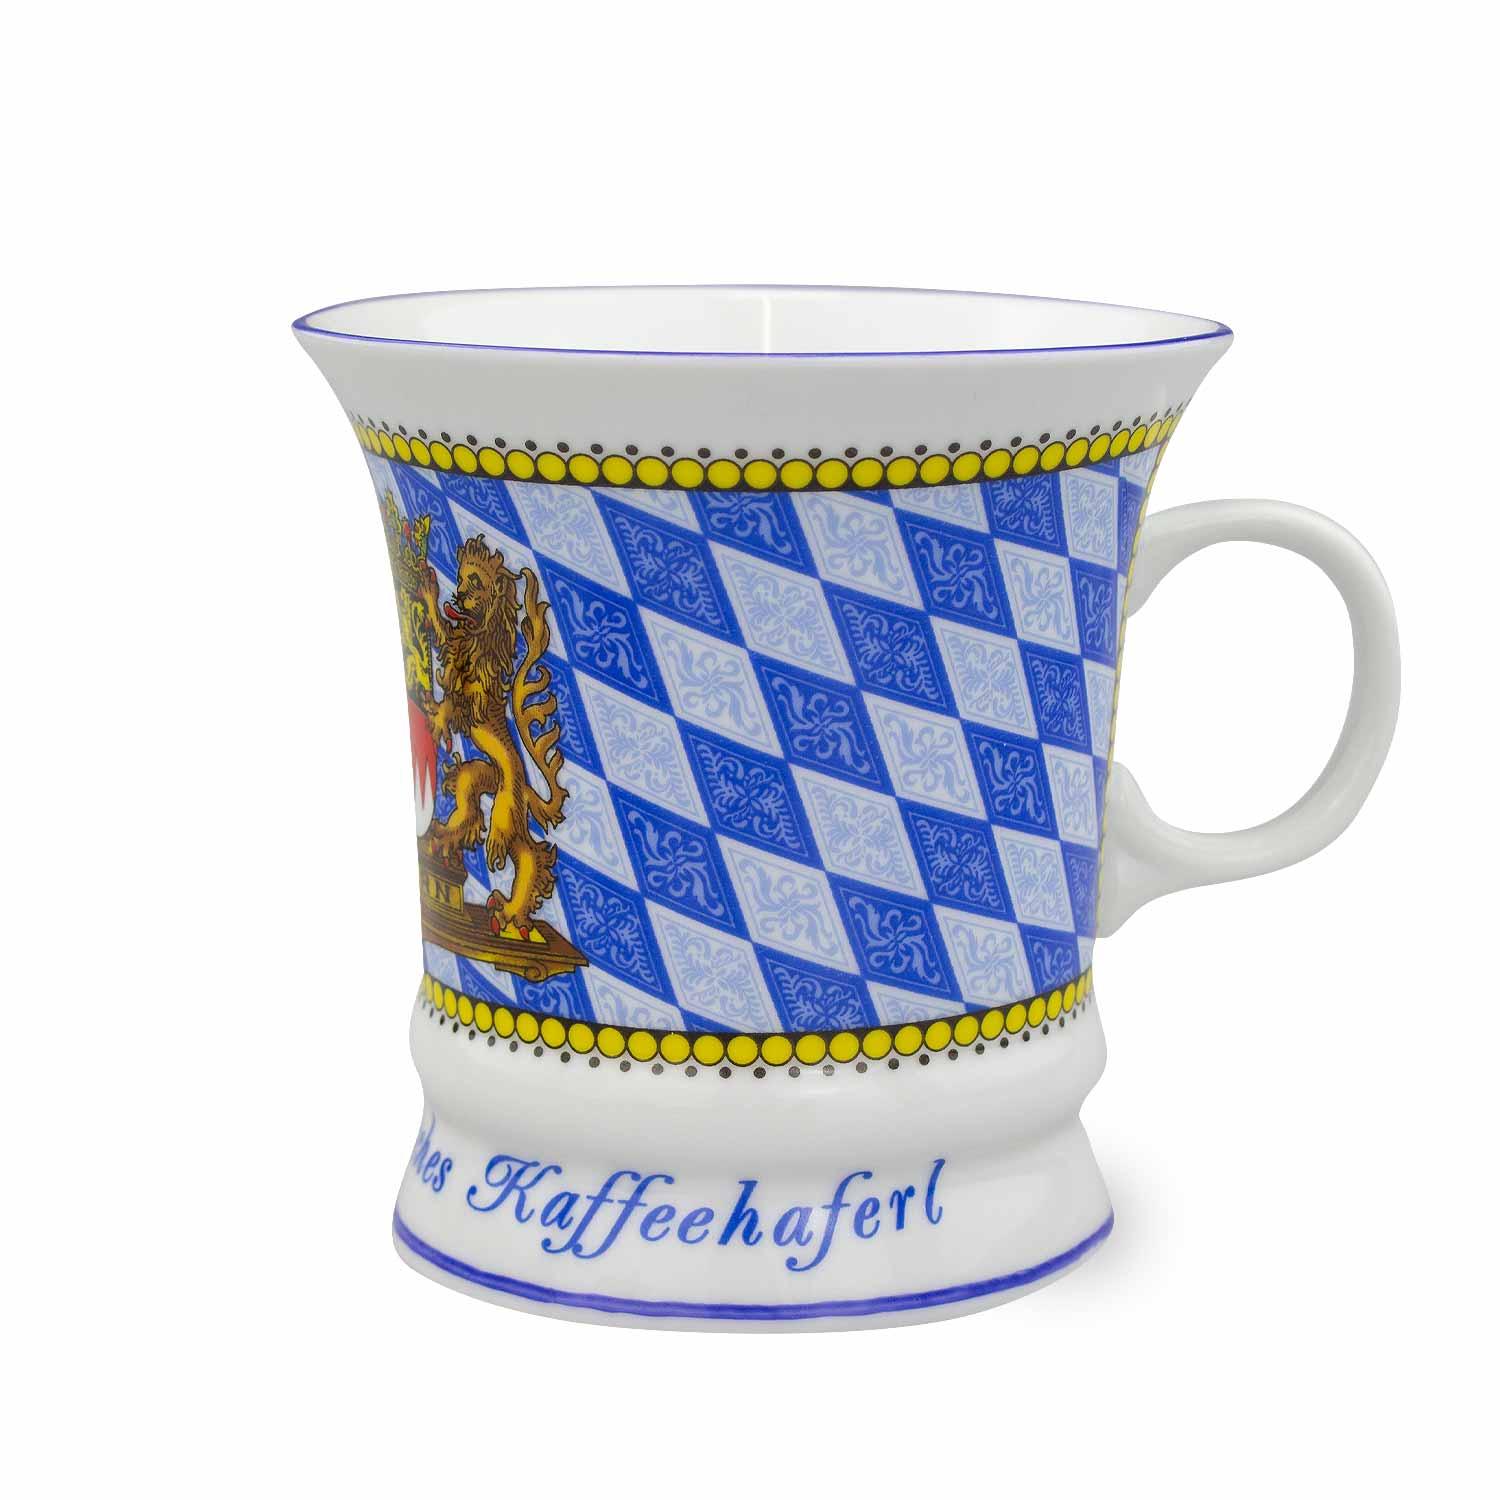 Kaffeetasse königlich bayerisch - bavariashop - mei LebensGfui